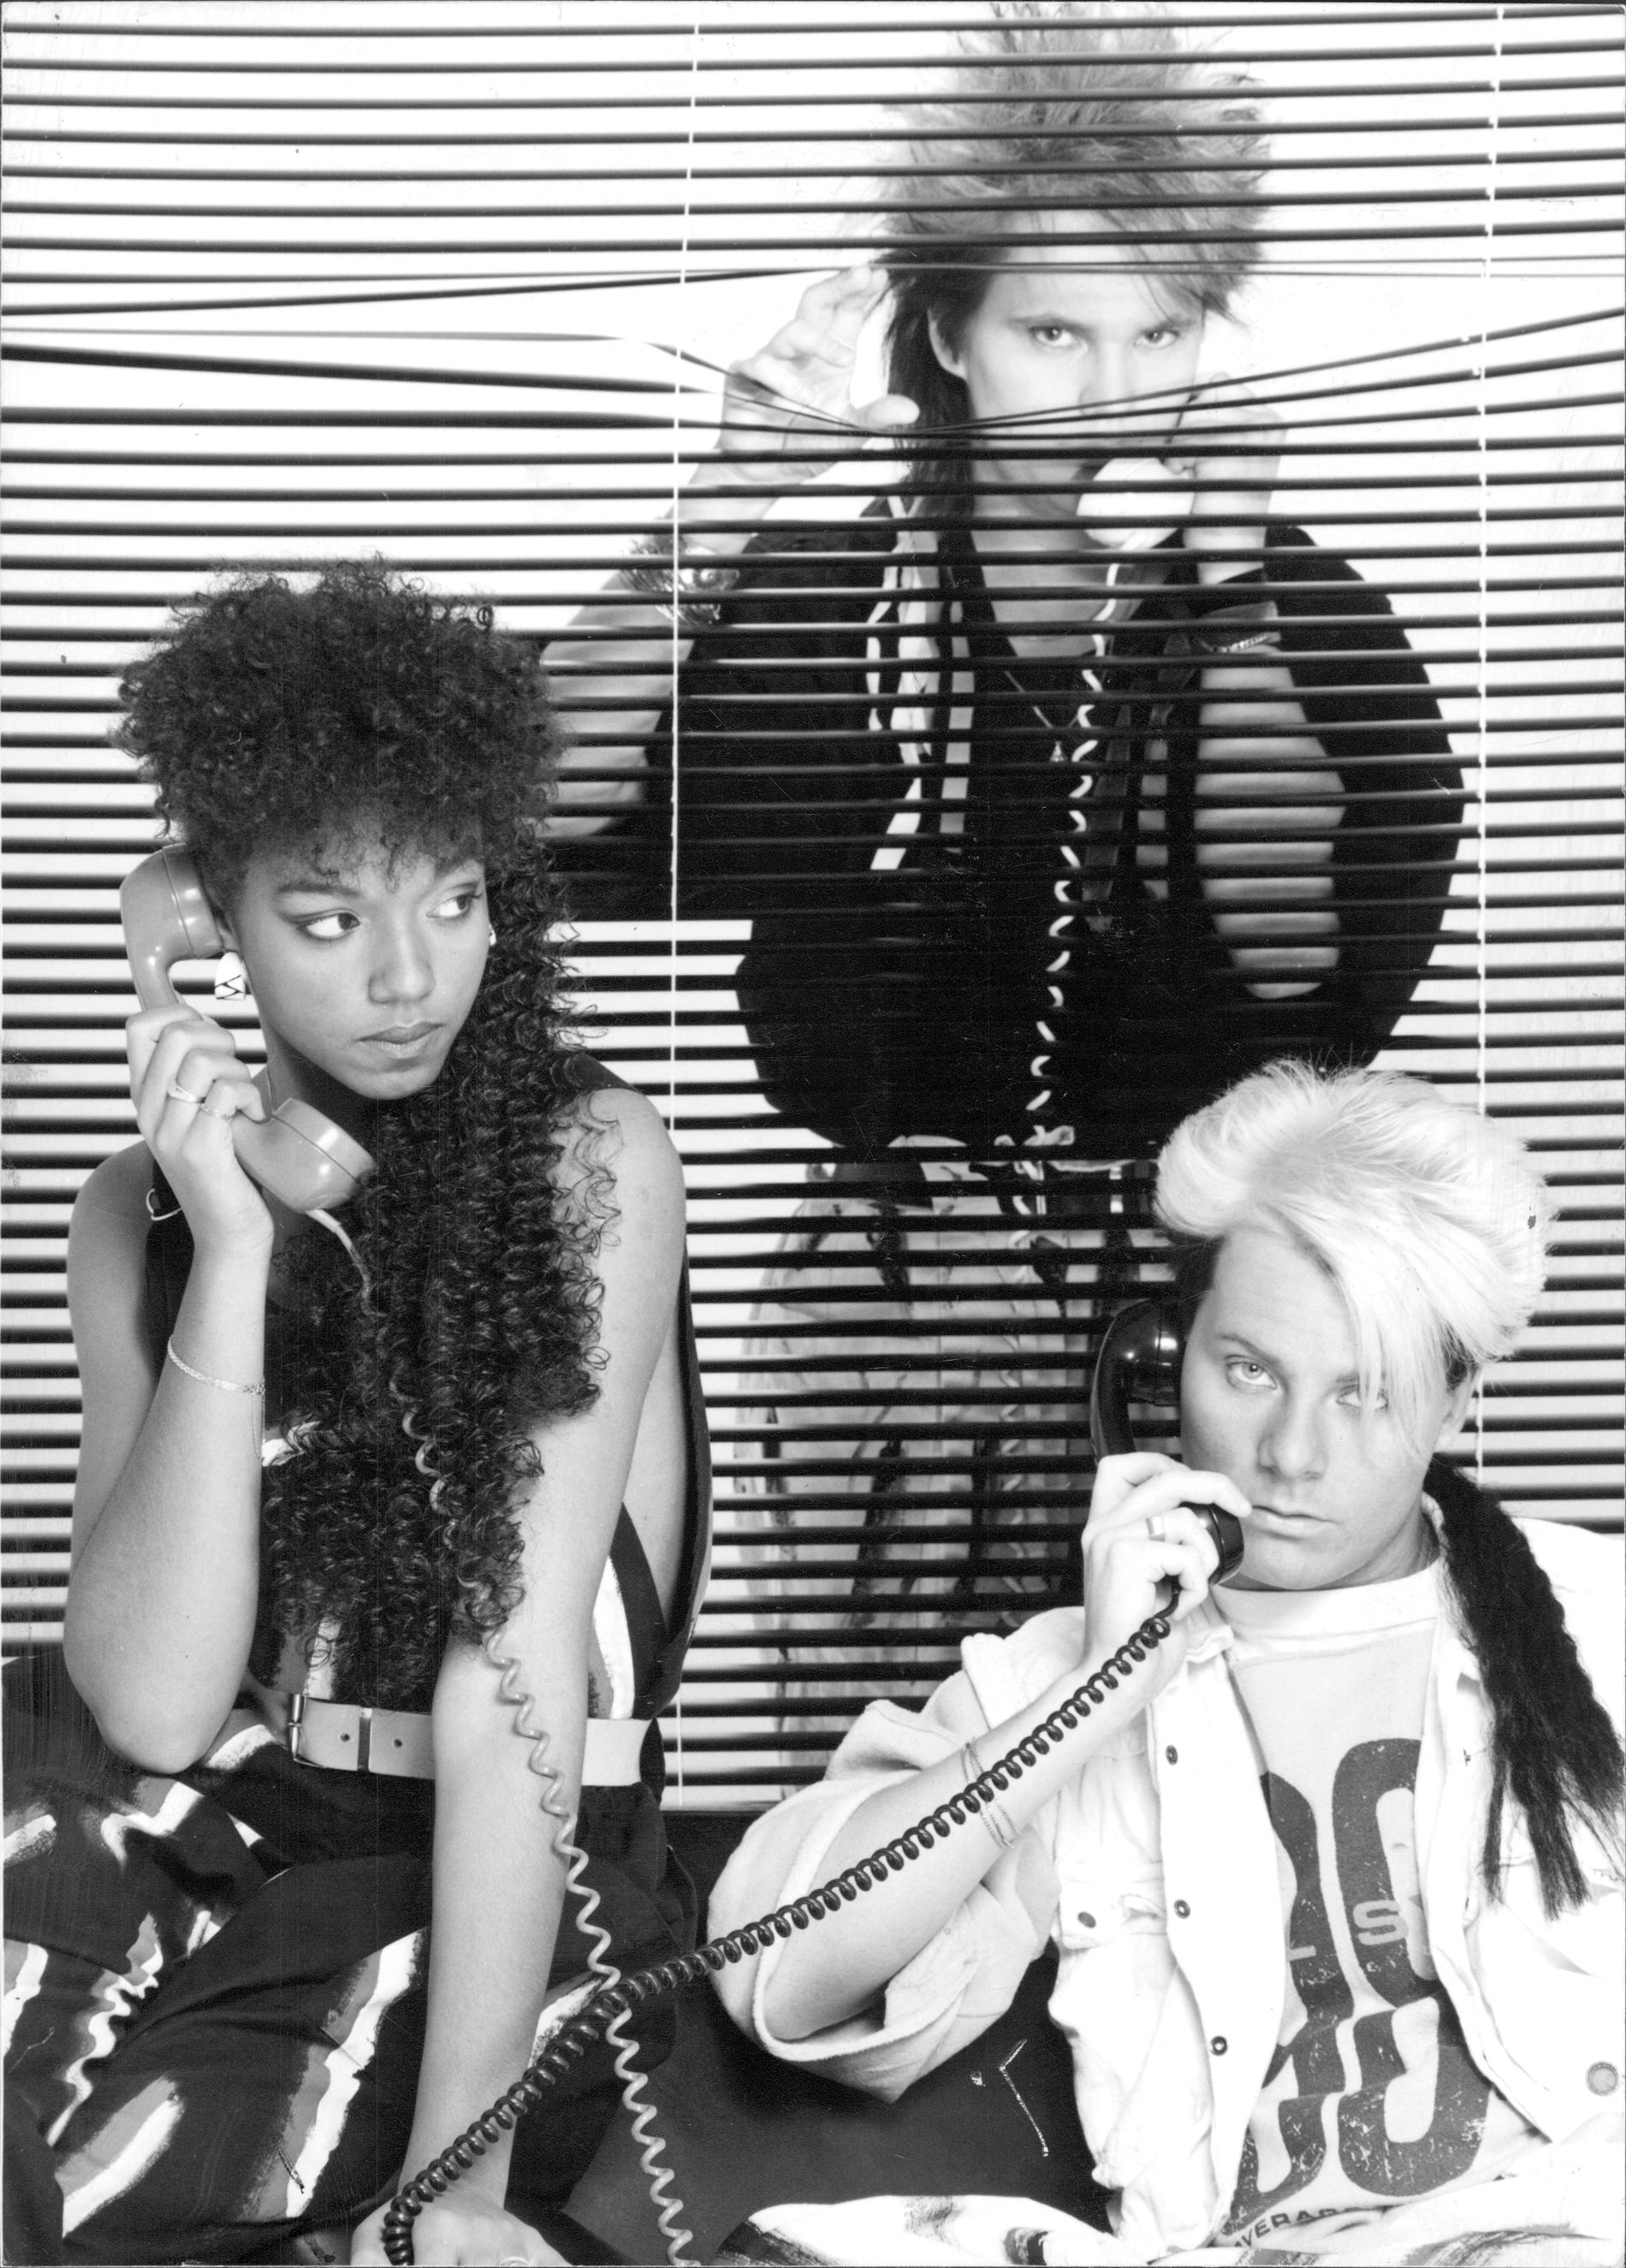 Style på en officiell promotionbild från 1985